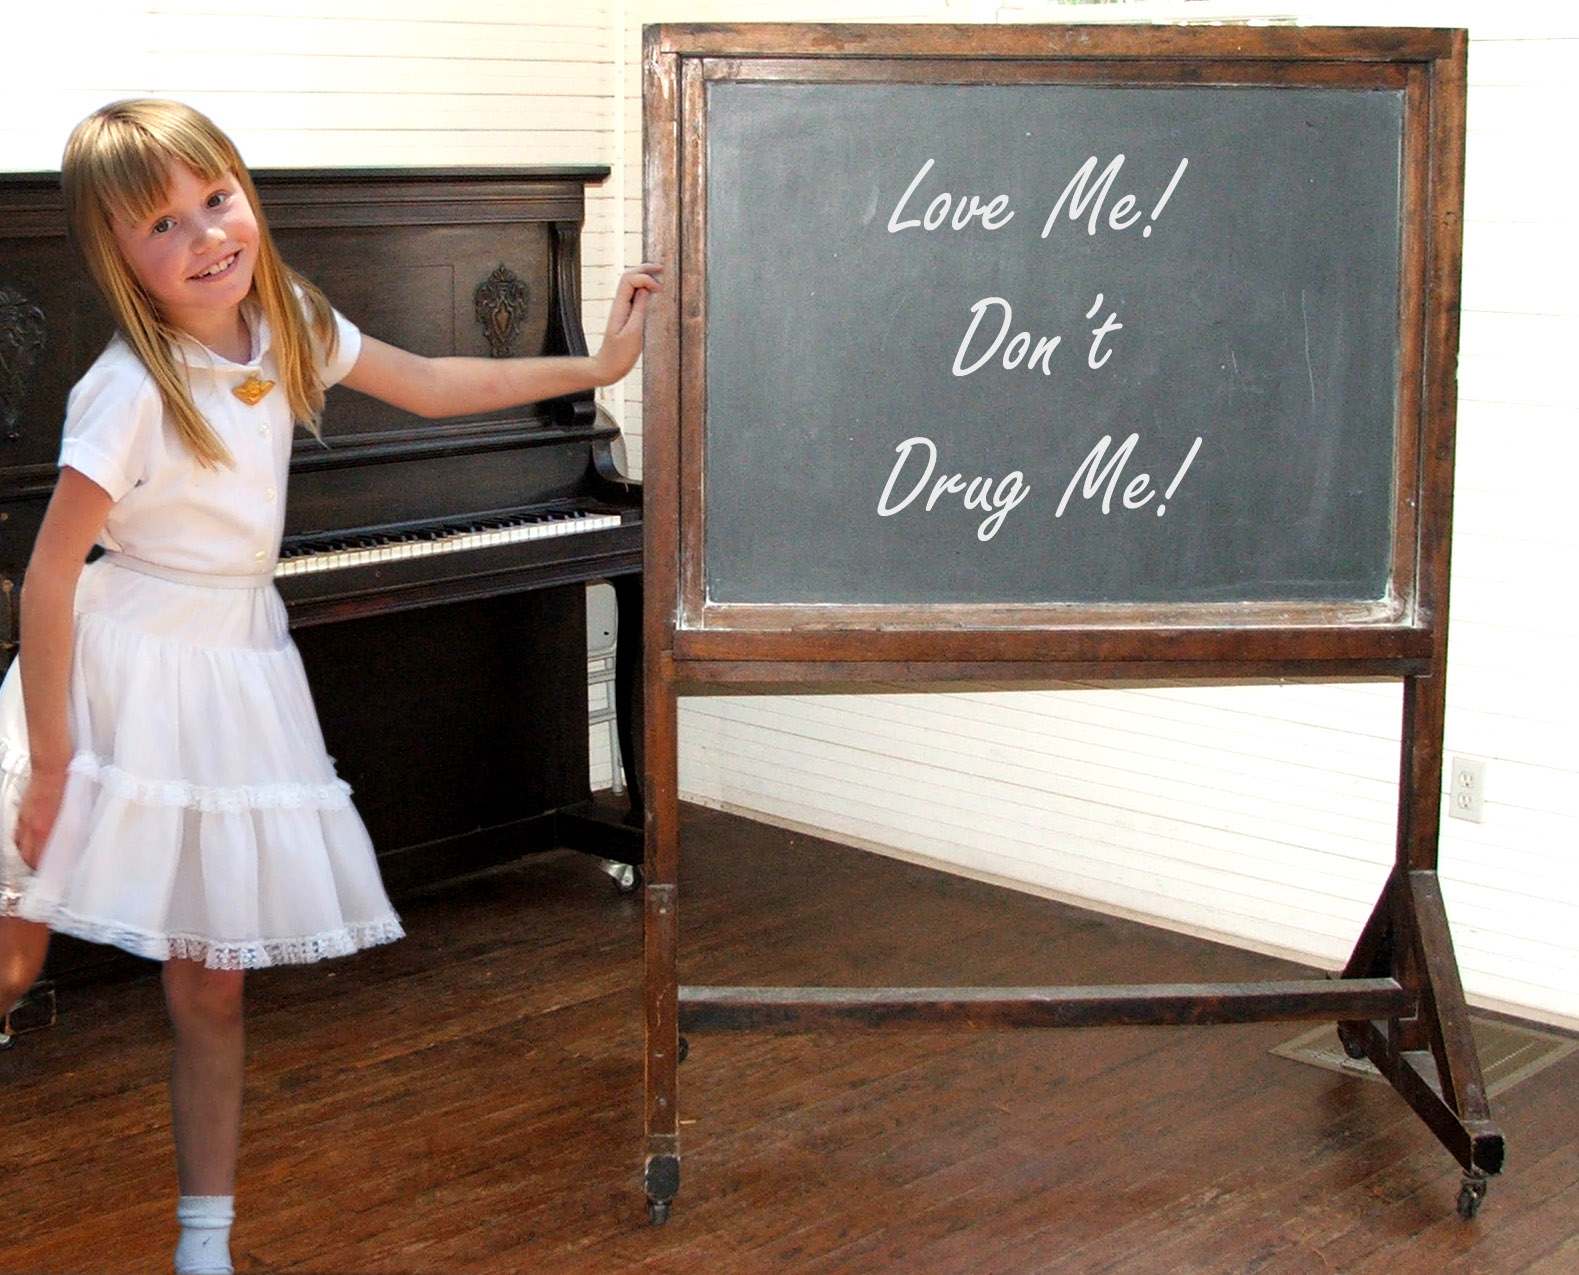 Детска кампания против употребата на дрога: ”Обичай ме, не ми давай наркотици”